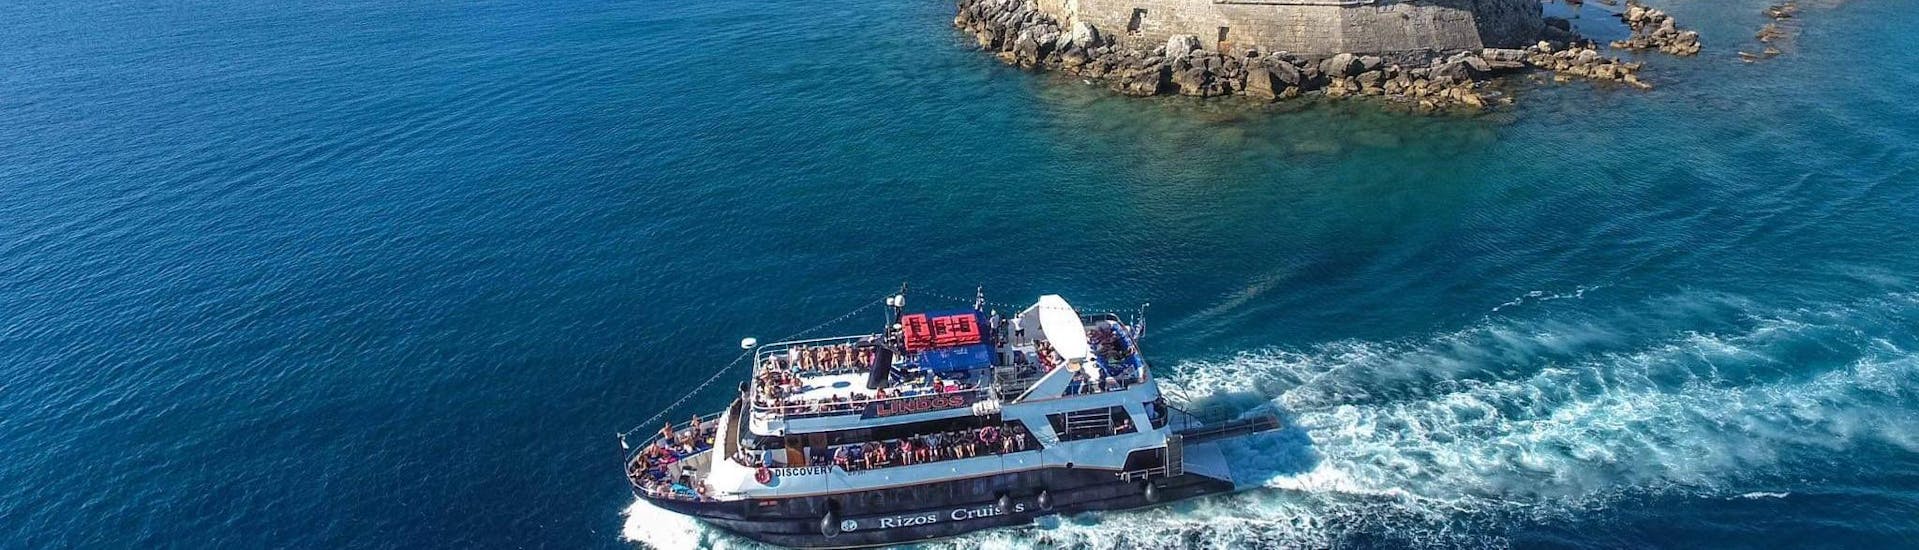 Le bateau "Discovery" navigue le long de la côte lors d'une des balades en bateau de Rizos Cruises Rhodes.